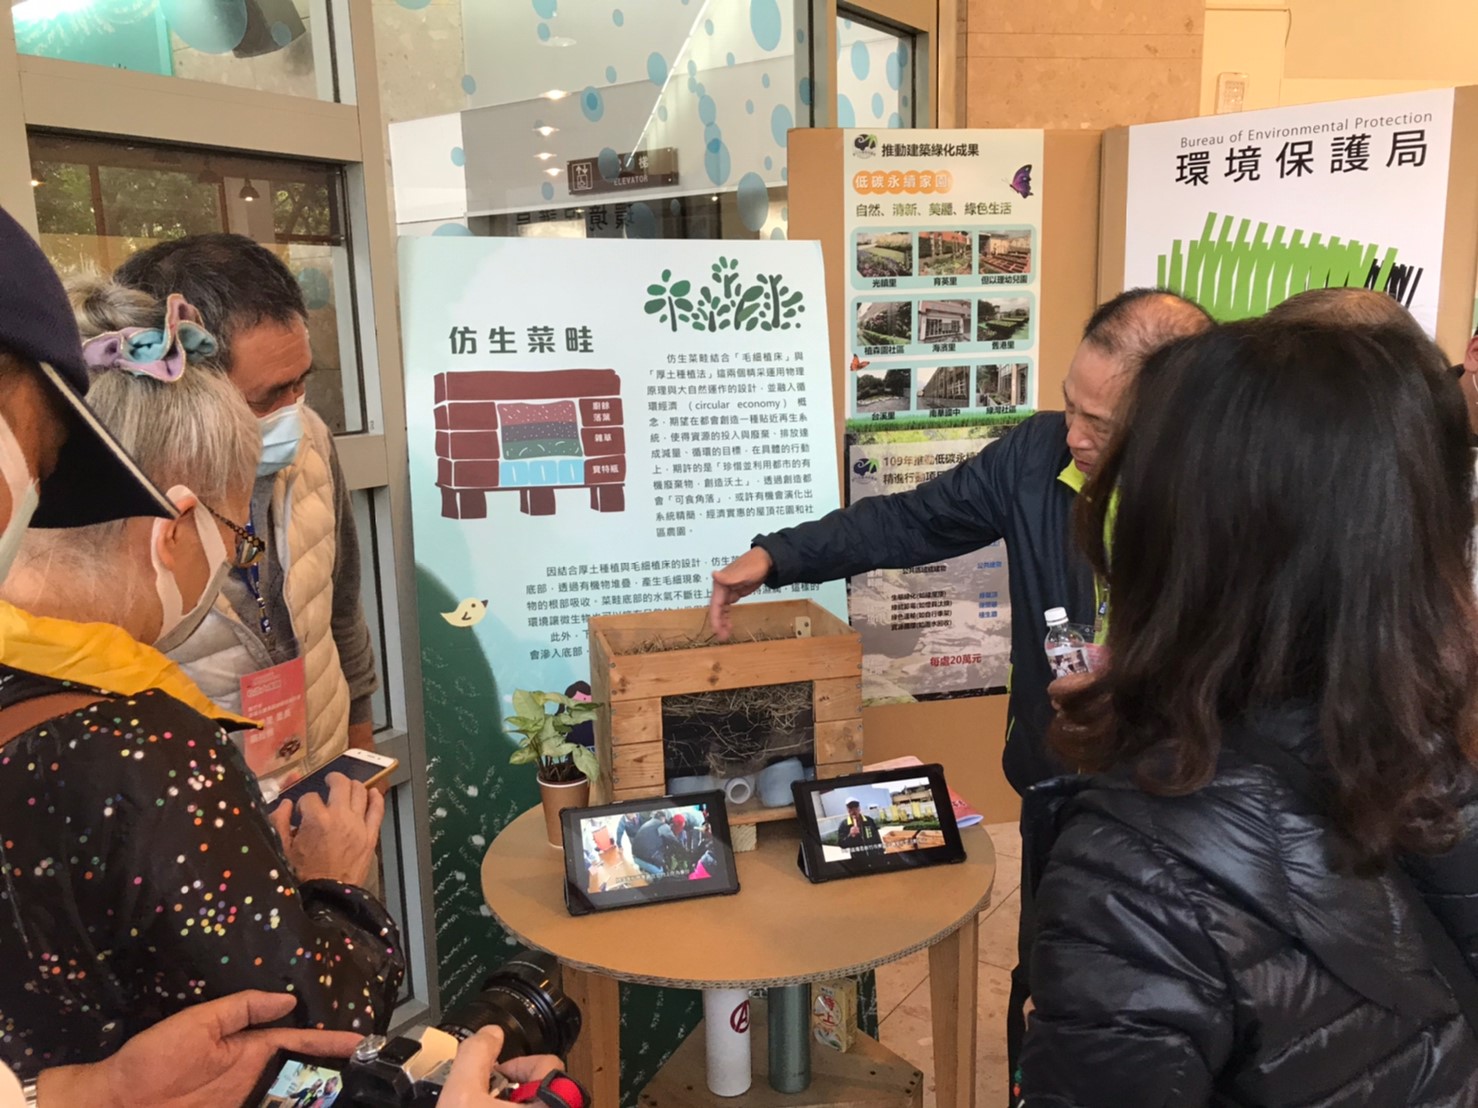 新竹市祭出低碳家園補助金200萬元  每單位最高補助20萬元  7月31日截止申請小圖共6張，pic6